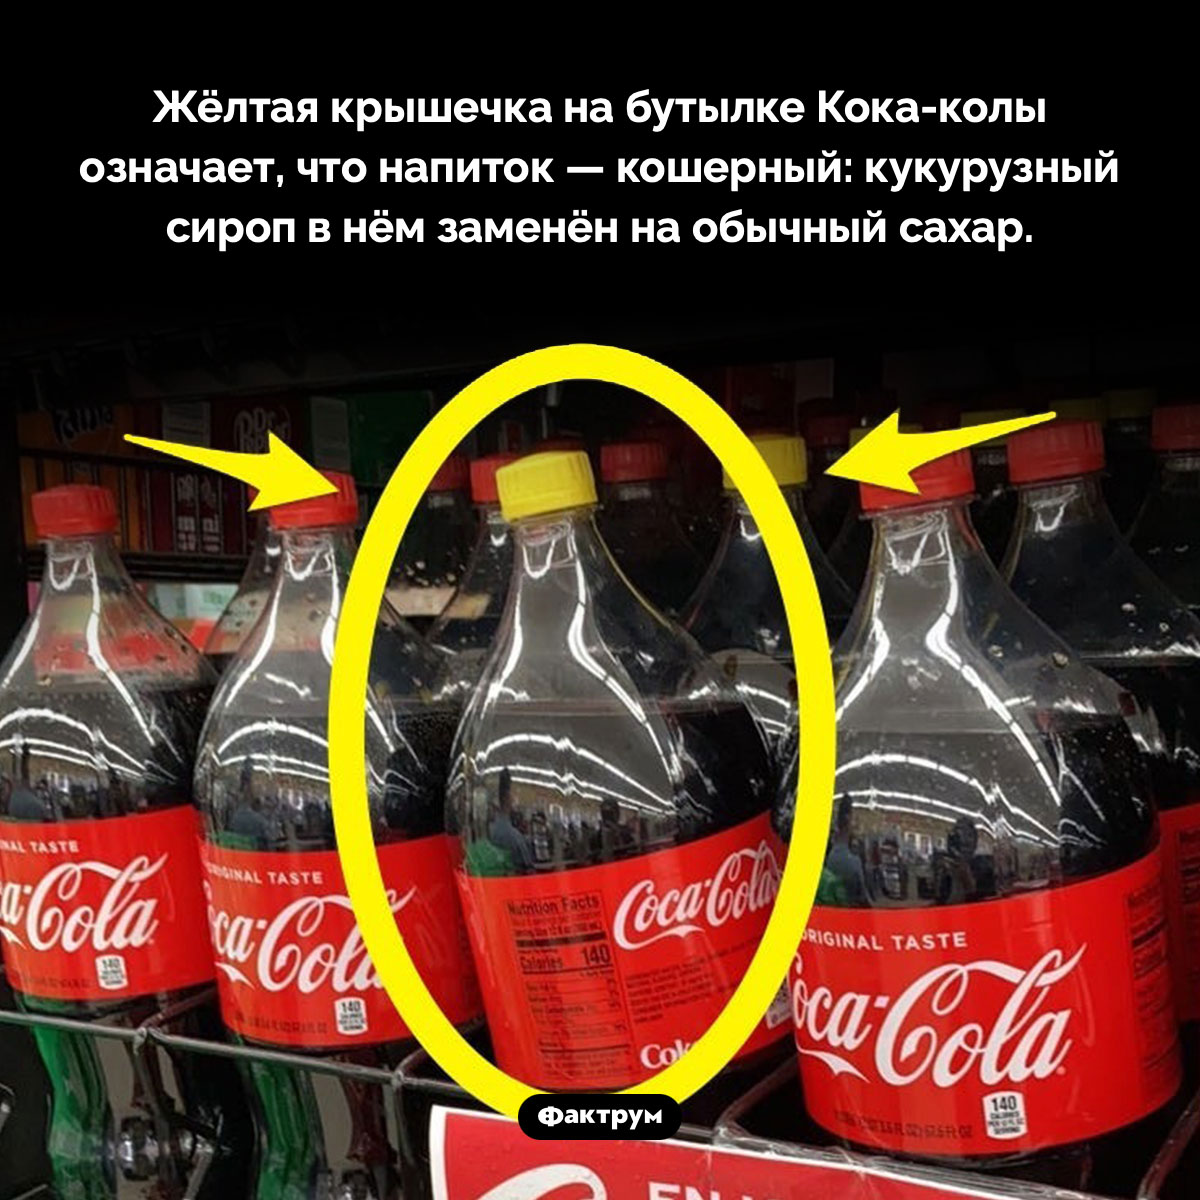 Кока-кола с жёлтой крышечкой является кошерной. Жёлтая крышечка на бутылке Кока-колы означает, что напиток — кошерный: кукурузный сироп в нём заменён на обычный сахар.